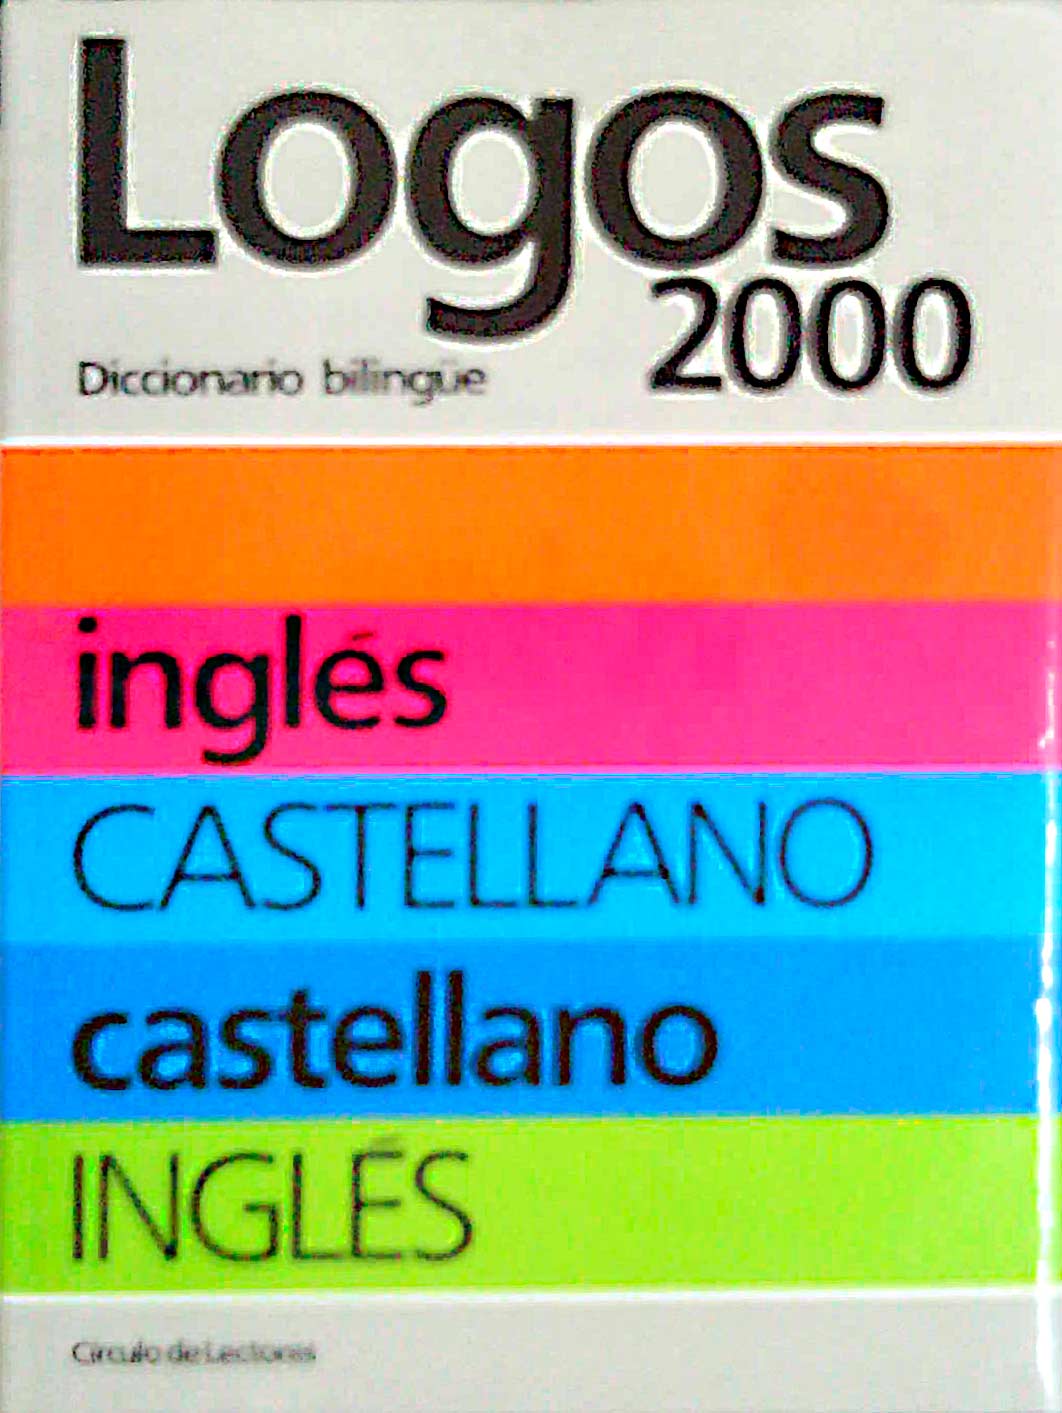 Diccionario bilingüe. Inglés/Castellano. Castellano/Inglés